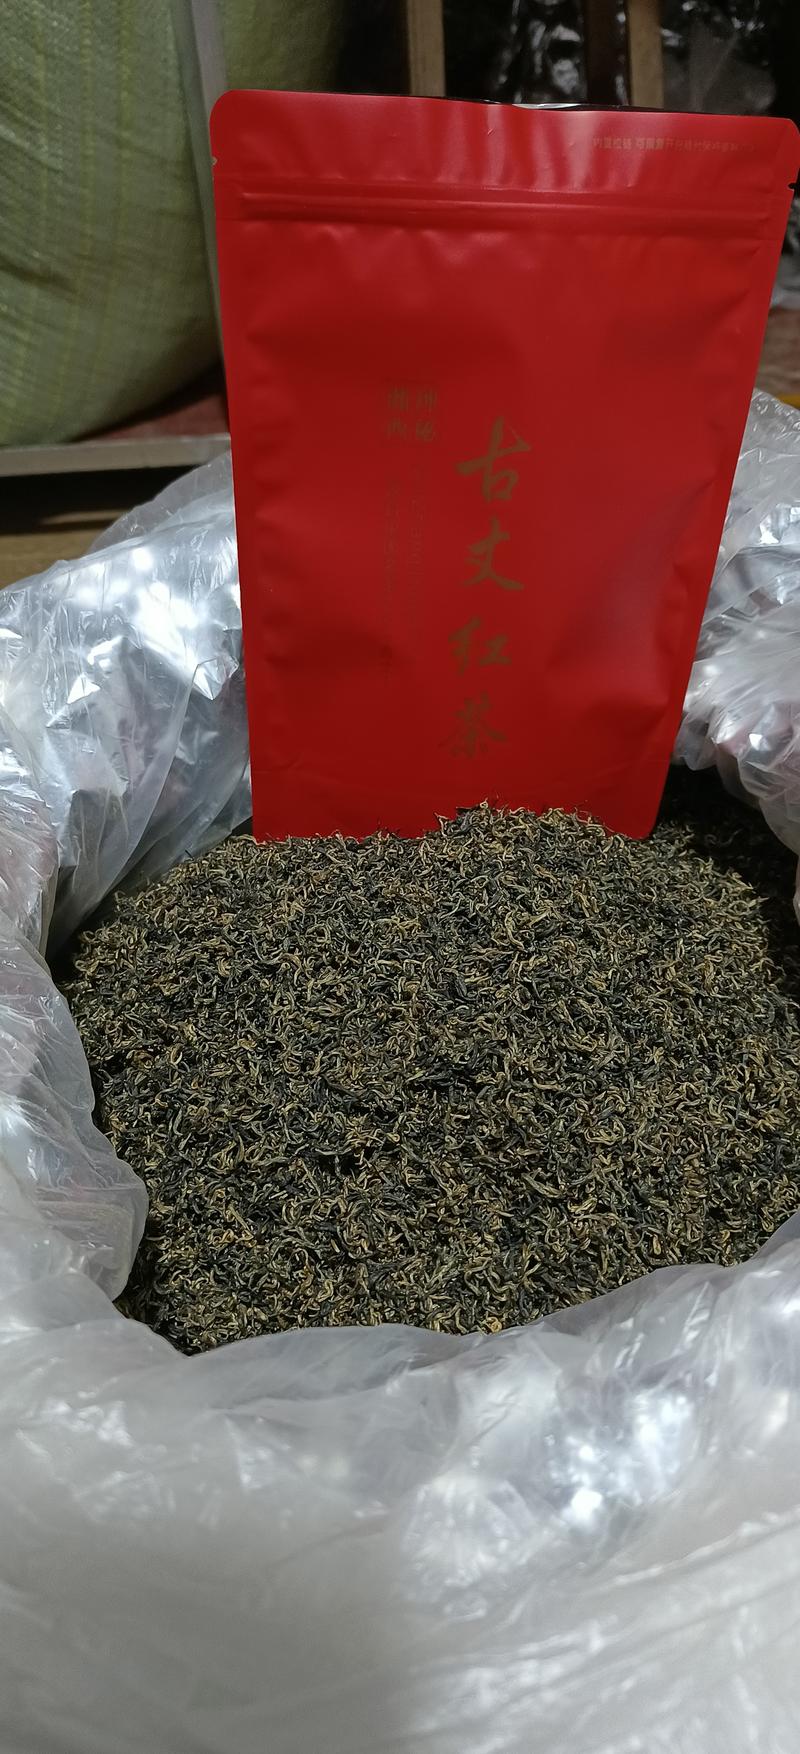 湖南湘西古丈红茶稳定上市全国包邮